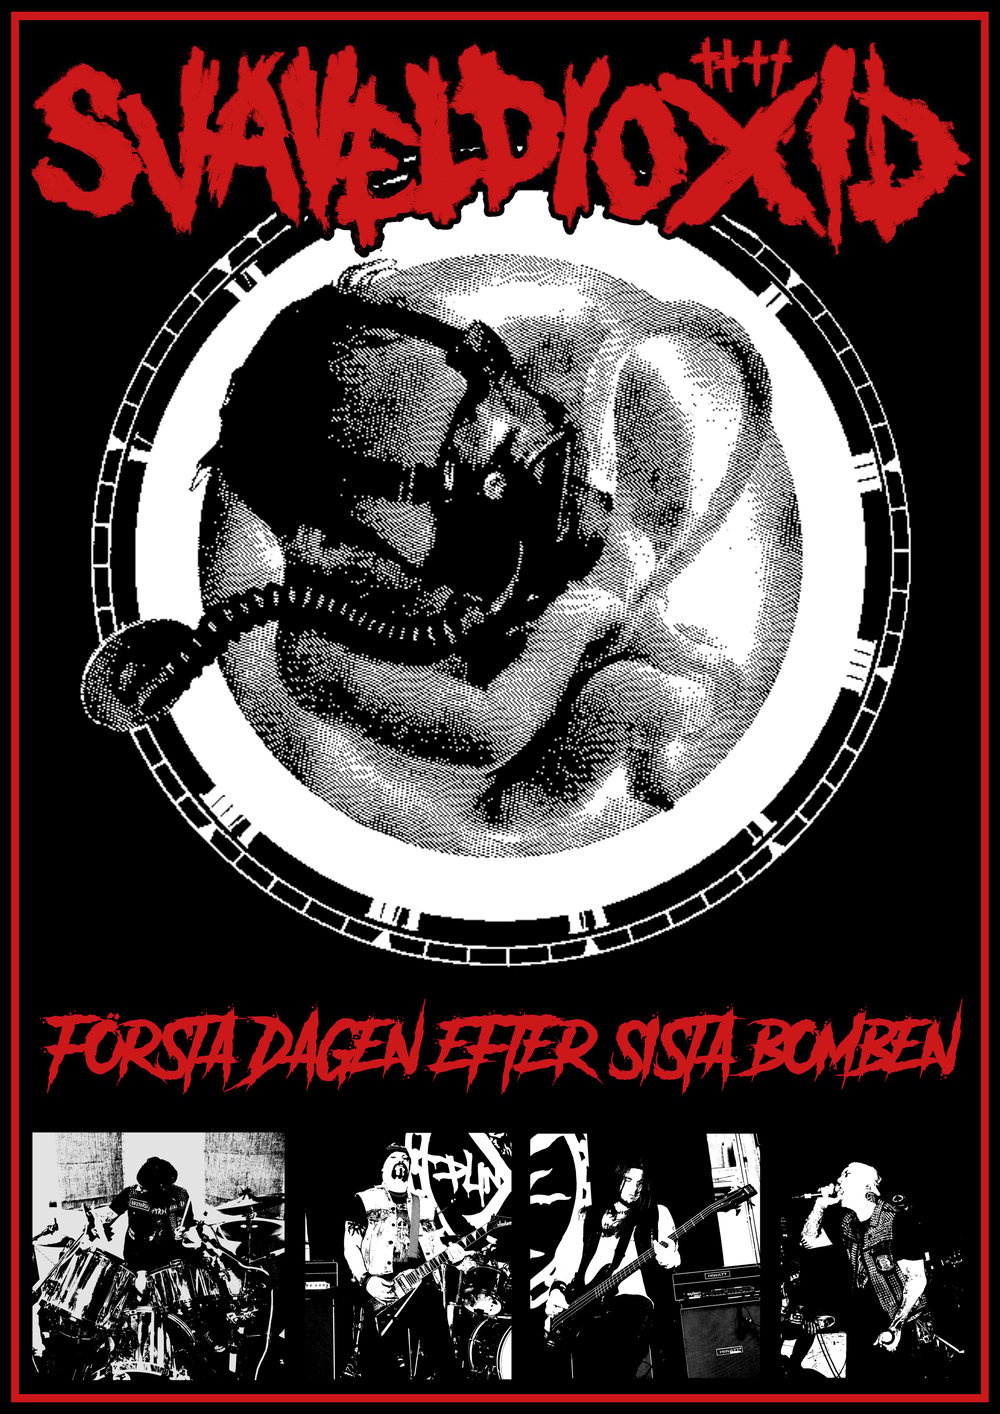 Svaveldioxid Första Dagen Efter Sista Bomben black vinyl 12-inch record, T-shirts, and Backpatch